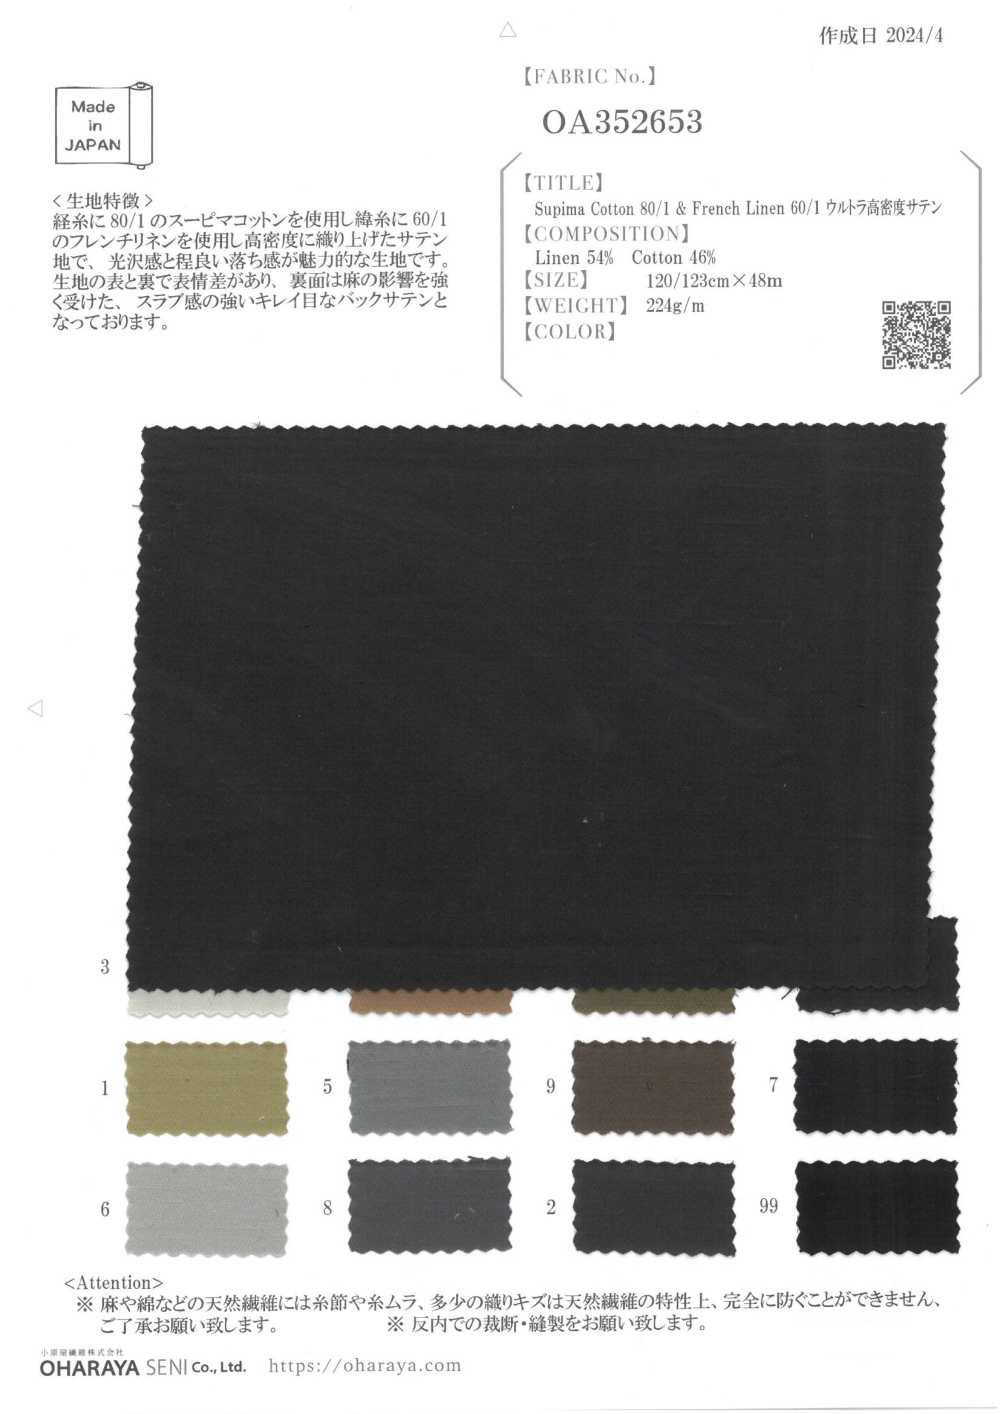 OA352653 蘇比馬棉 80/1 和法國亞麻 60/1 超密緞紋[面料] 小原屋繊維